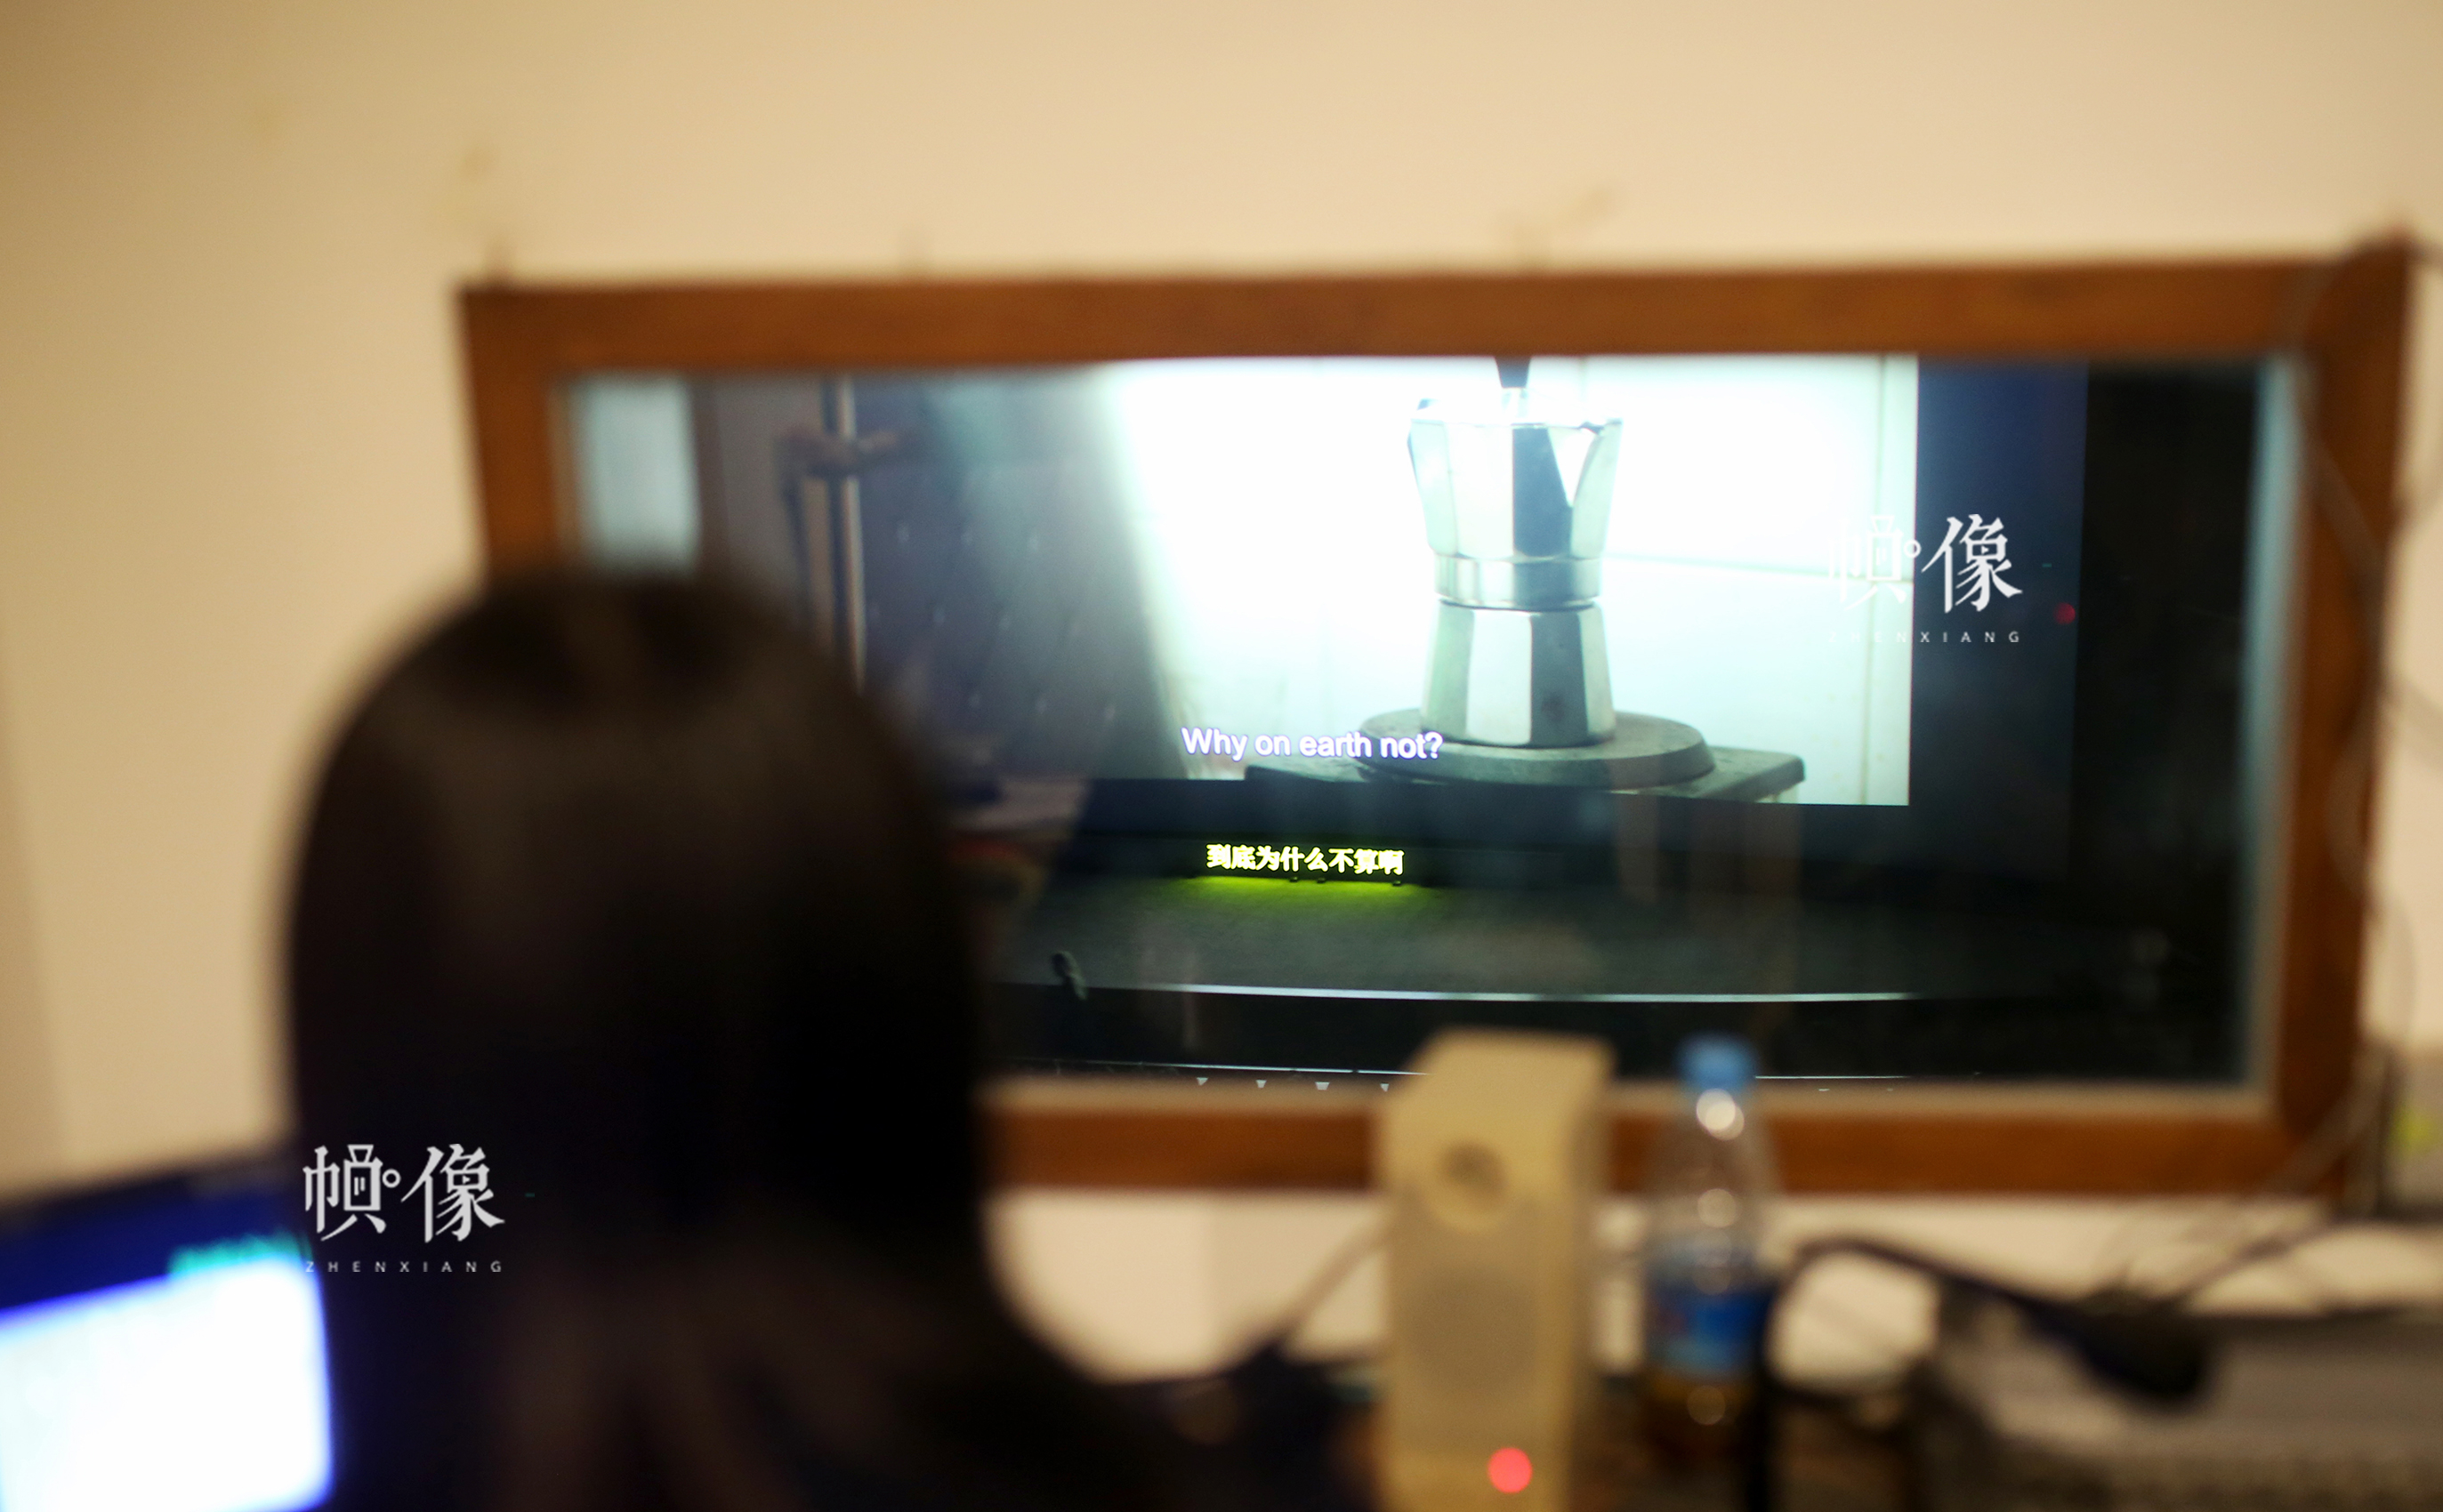 周立烨透过身侧的玻璃看着电影银幕，为电影加中文字幕。中国网记者 焦源源 摄